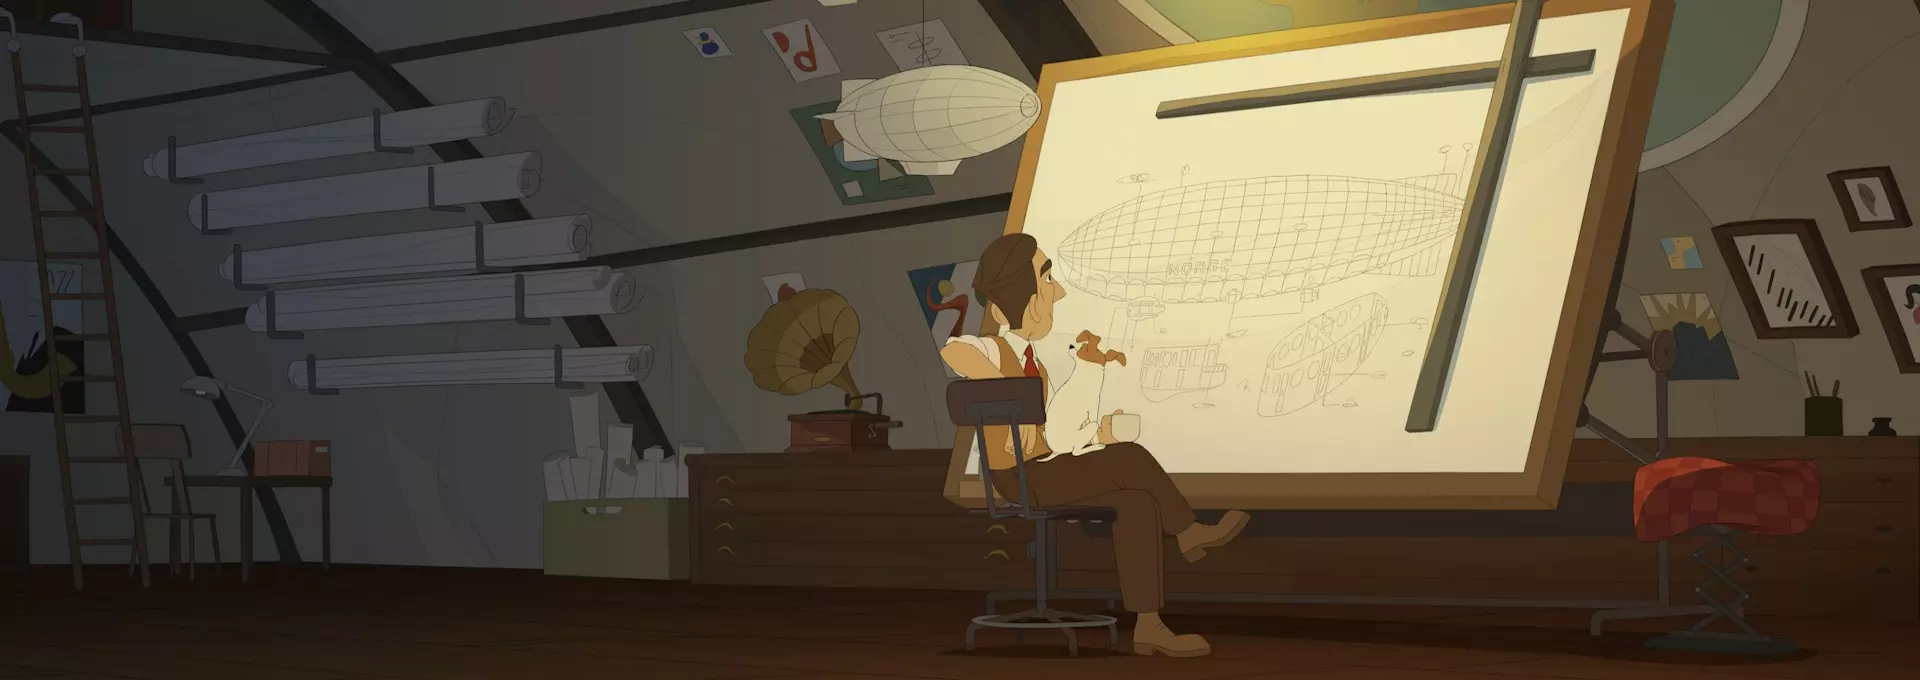 Stillbilde fra filmen Titina. En mann sitter foran et stort stående tegnebrett og tegner en teknisk tegning av et luftskip. Rommet han sitter i ser ut som arbeidsværelset hans som luftskipingeniør. 